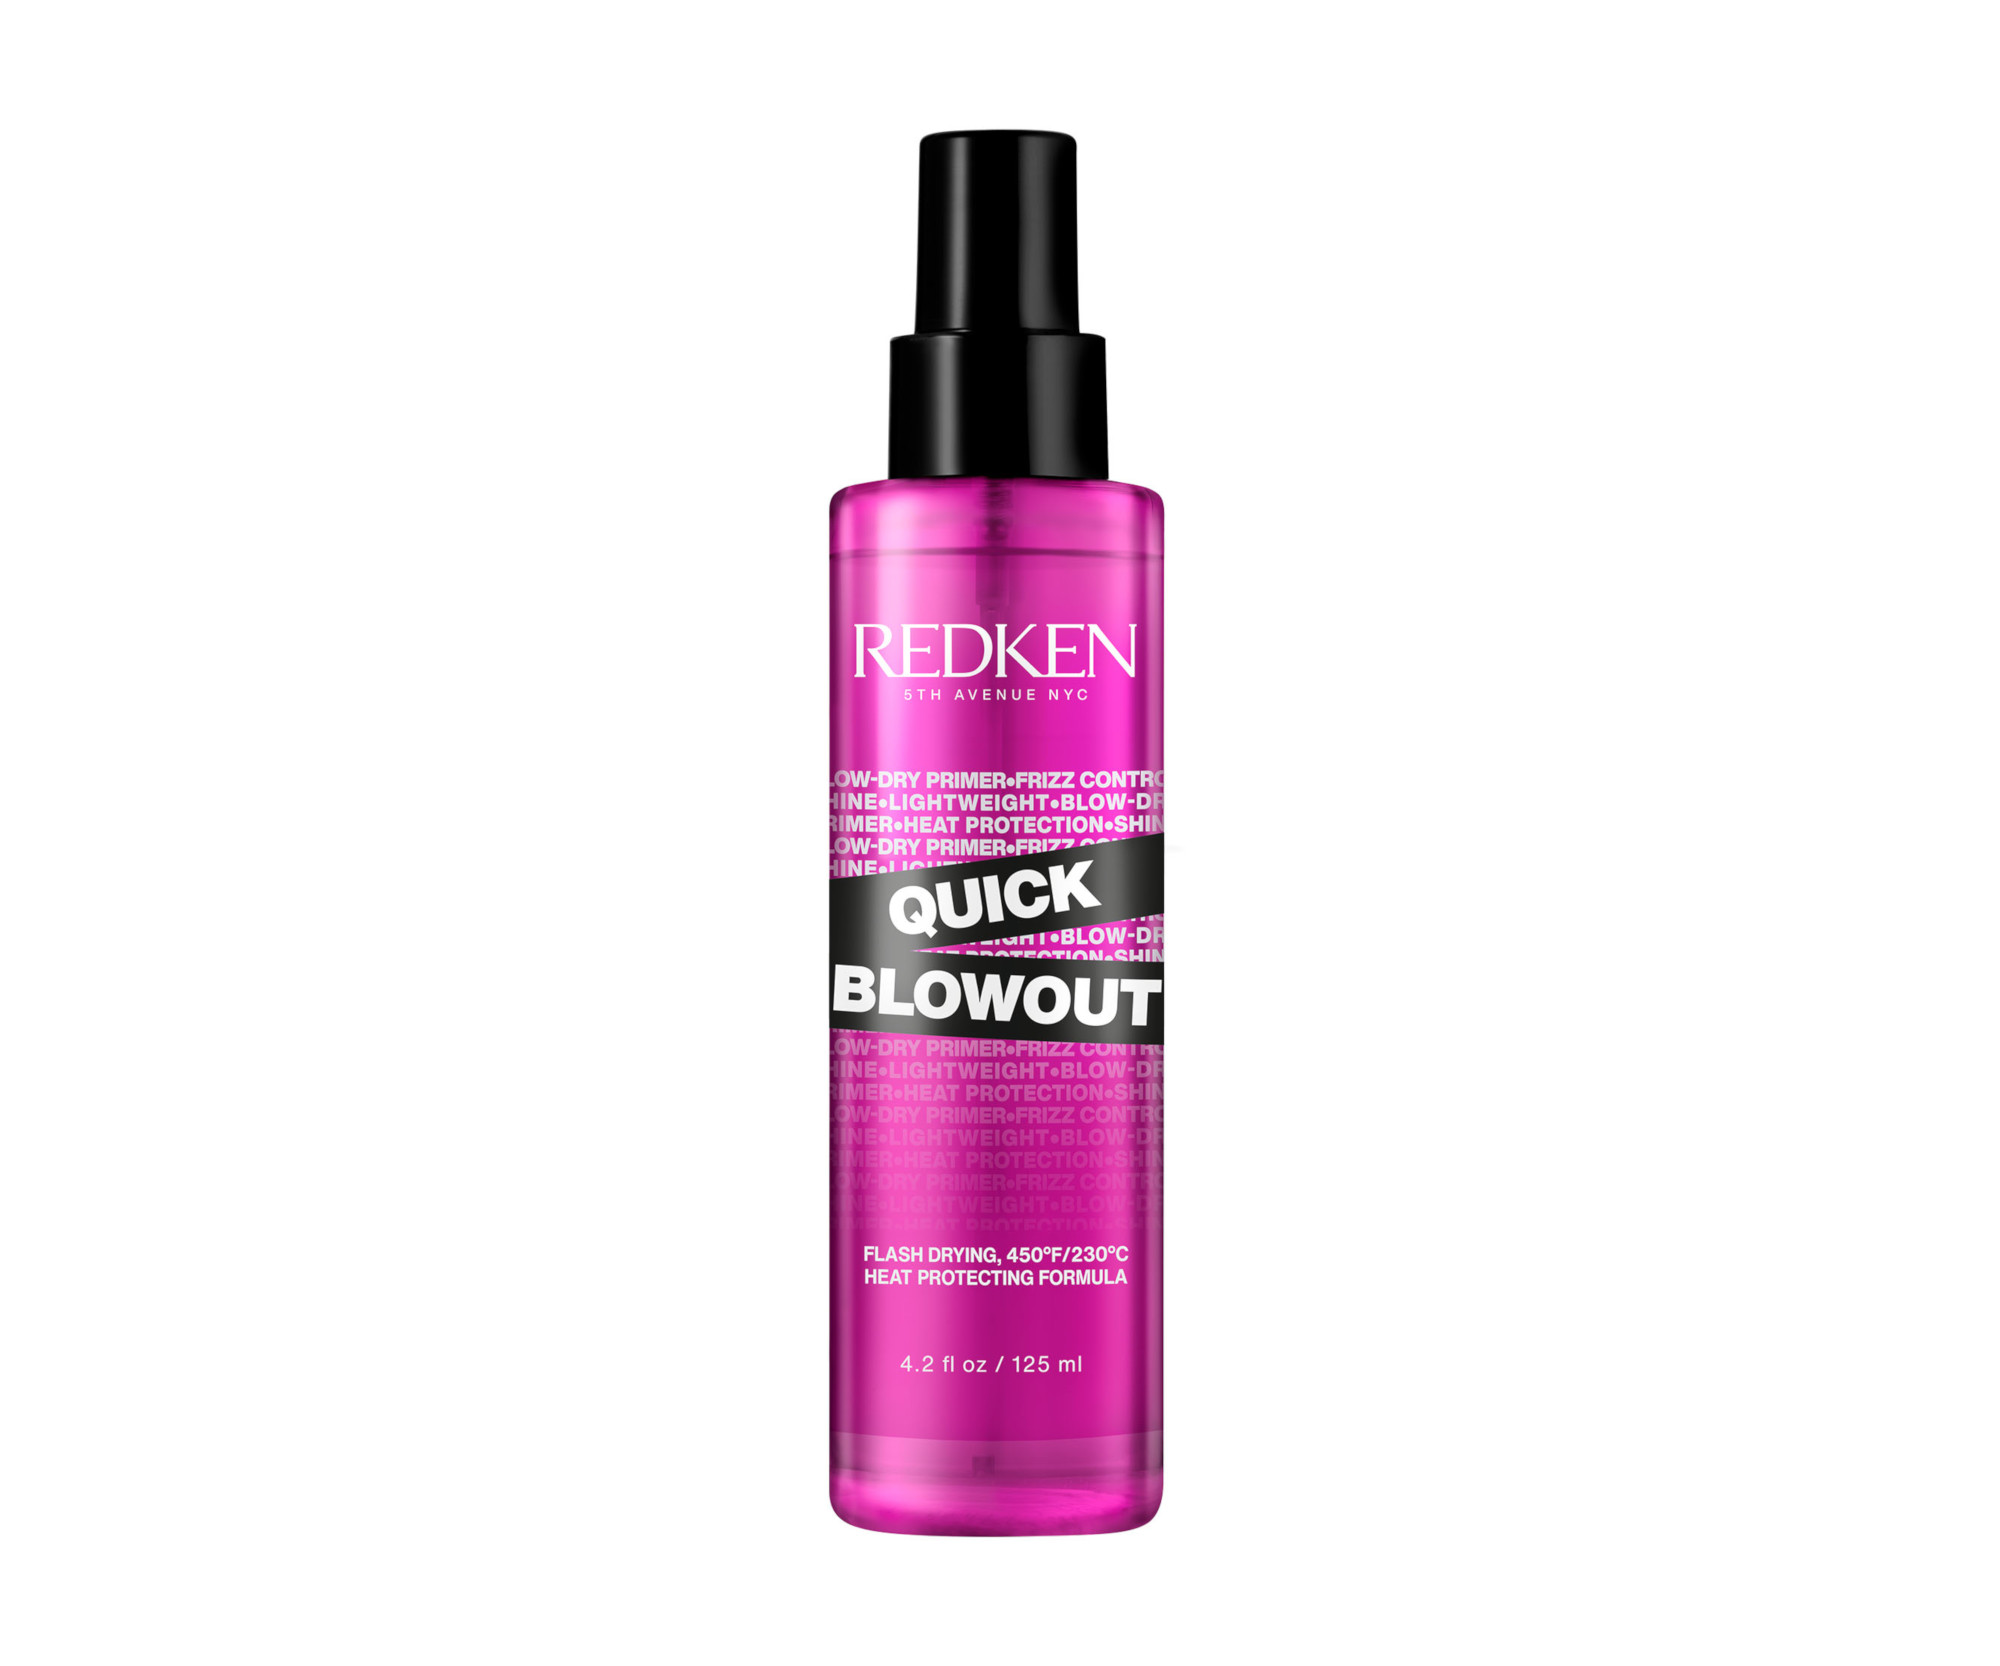 Termoochranný sprej pro urychlení vysoušení vlasů Redken Quick Blowout - 125 ml + DÁREK ZDARMA